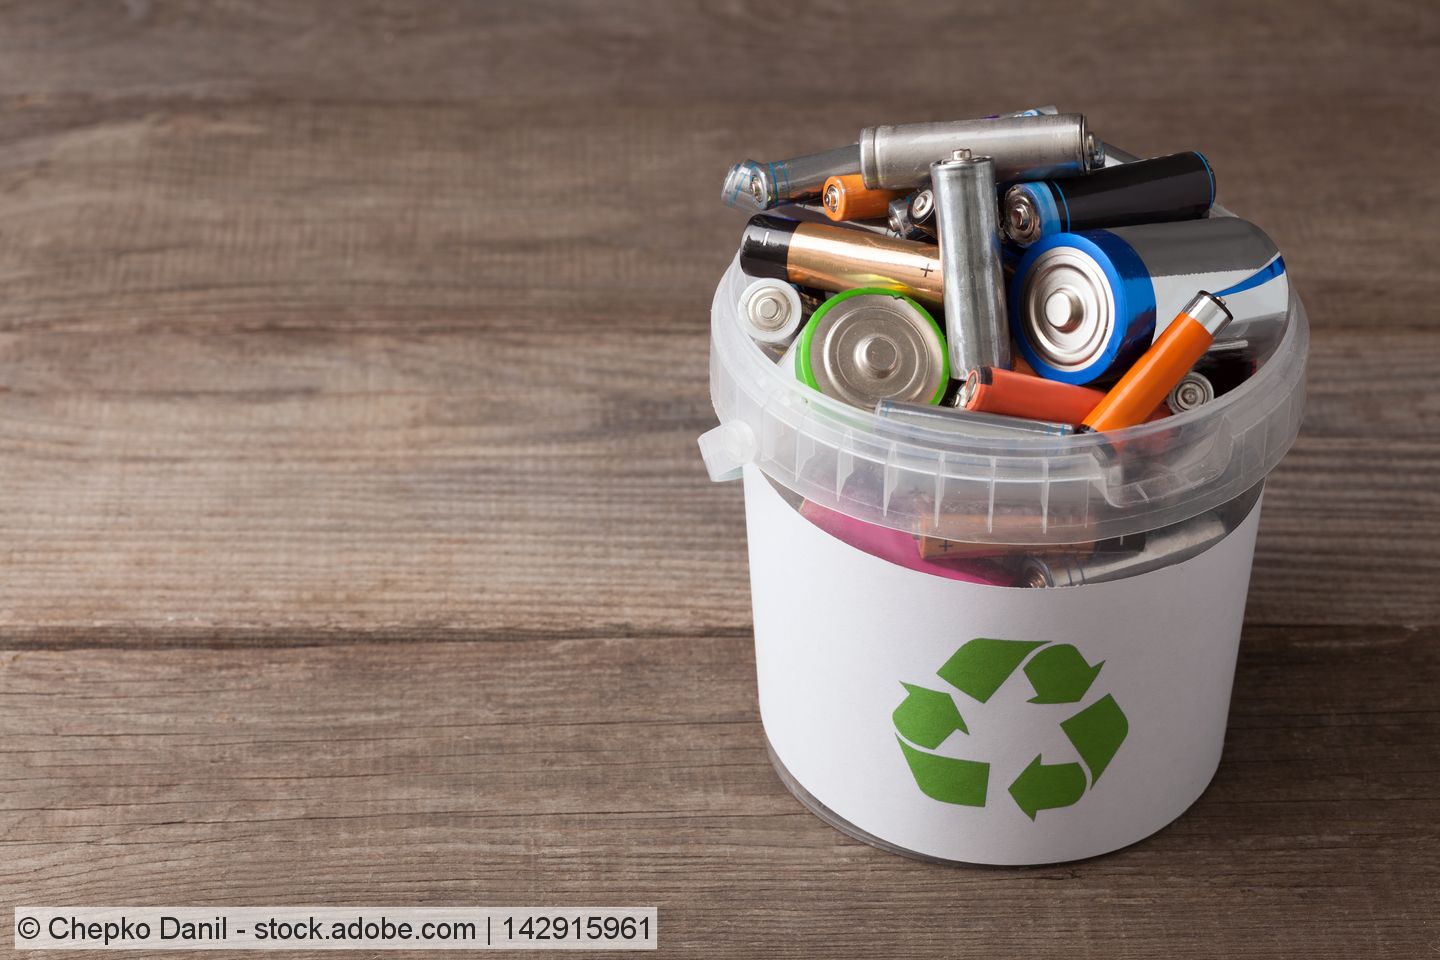 Umweltverbände fordern höhere Sammelziele und Recyclingquoten für Altbatterien